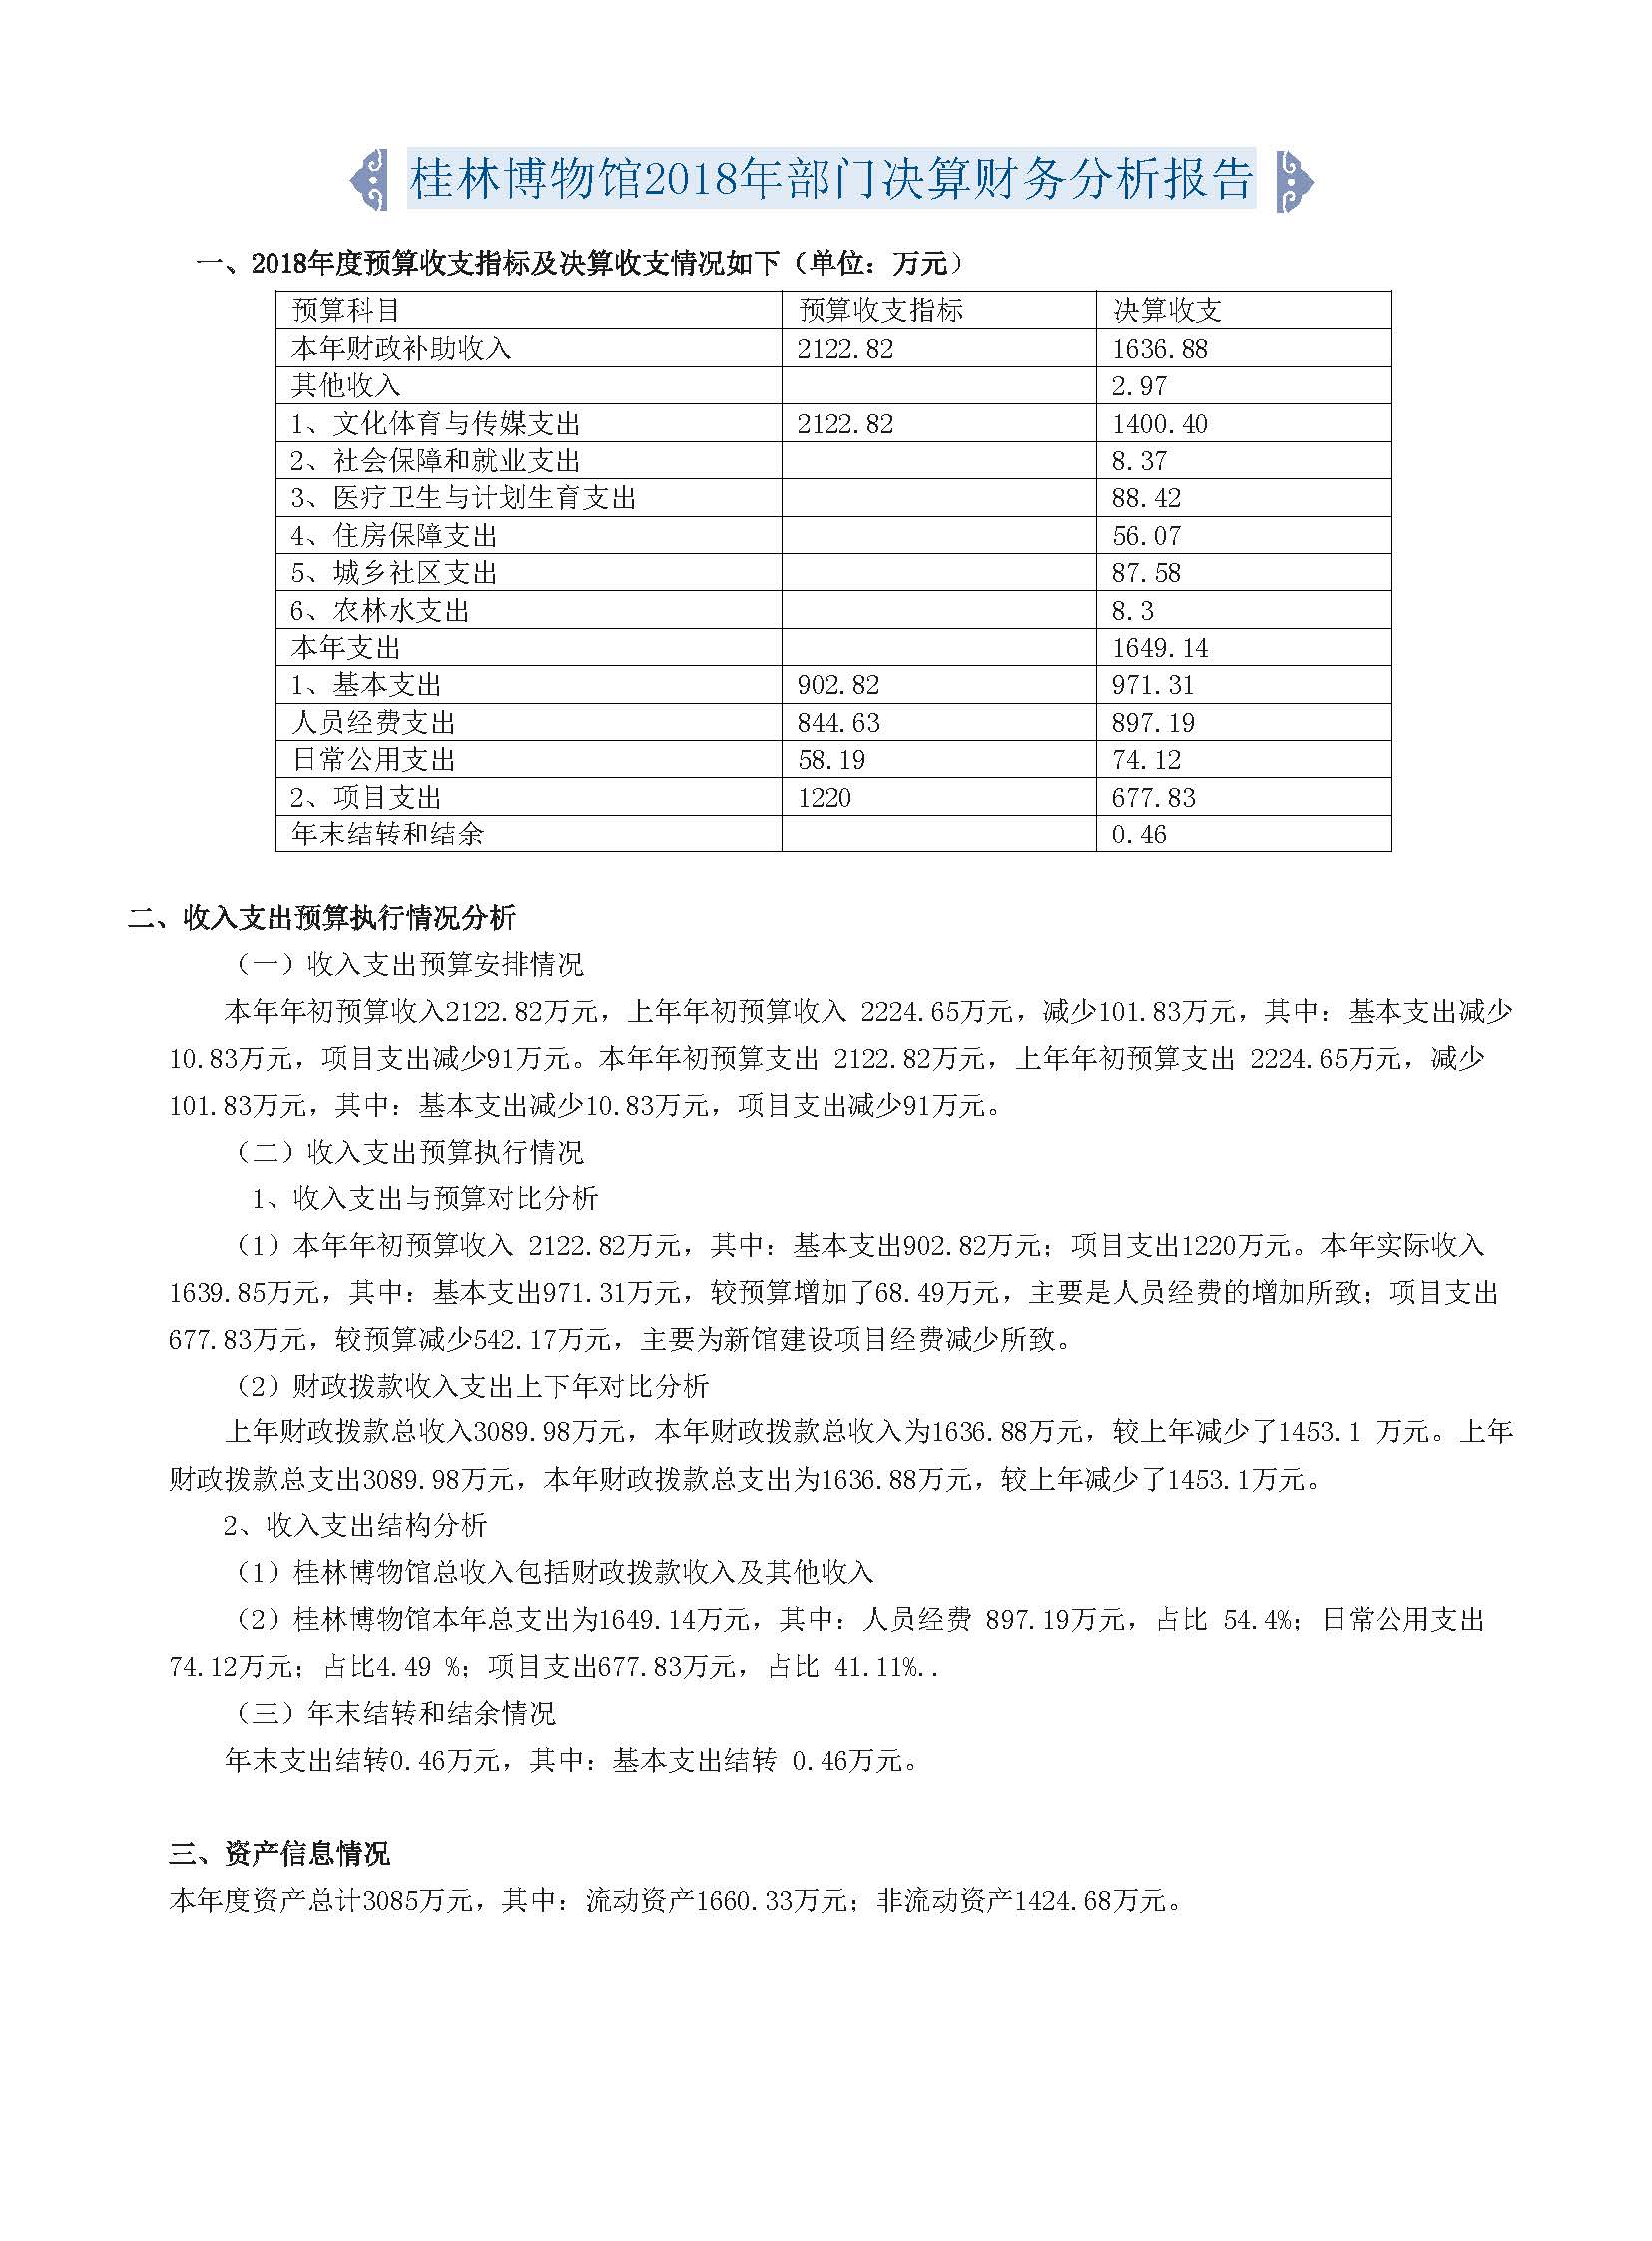 桂林博物馆2018年度报告.pdf_页面_003.jpg